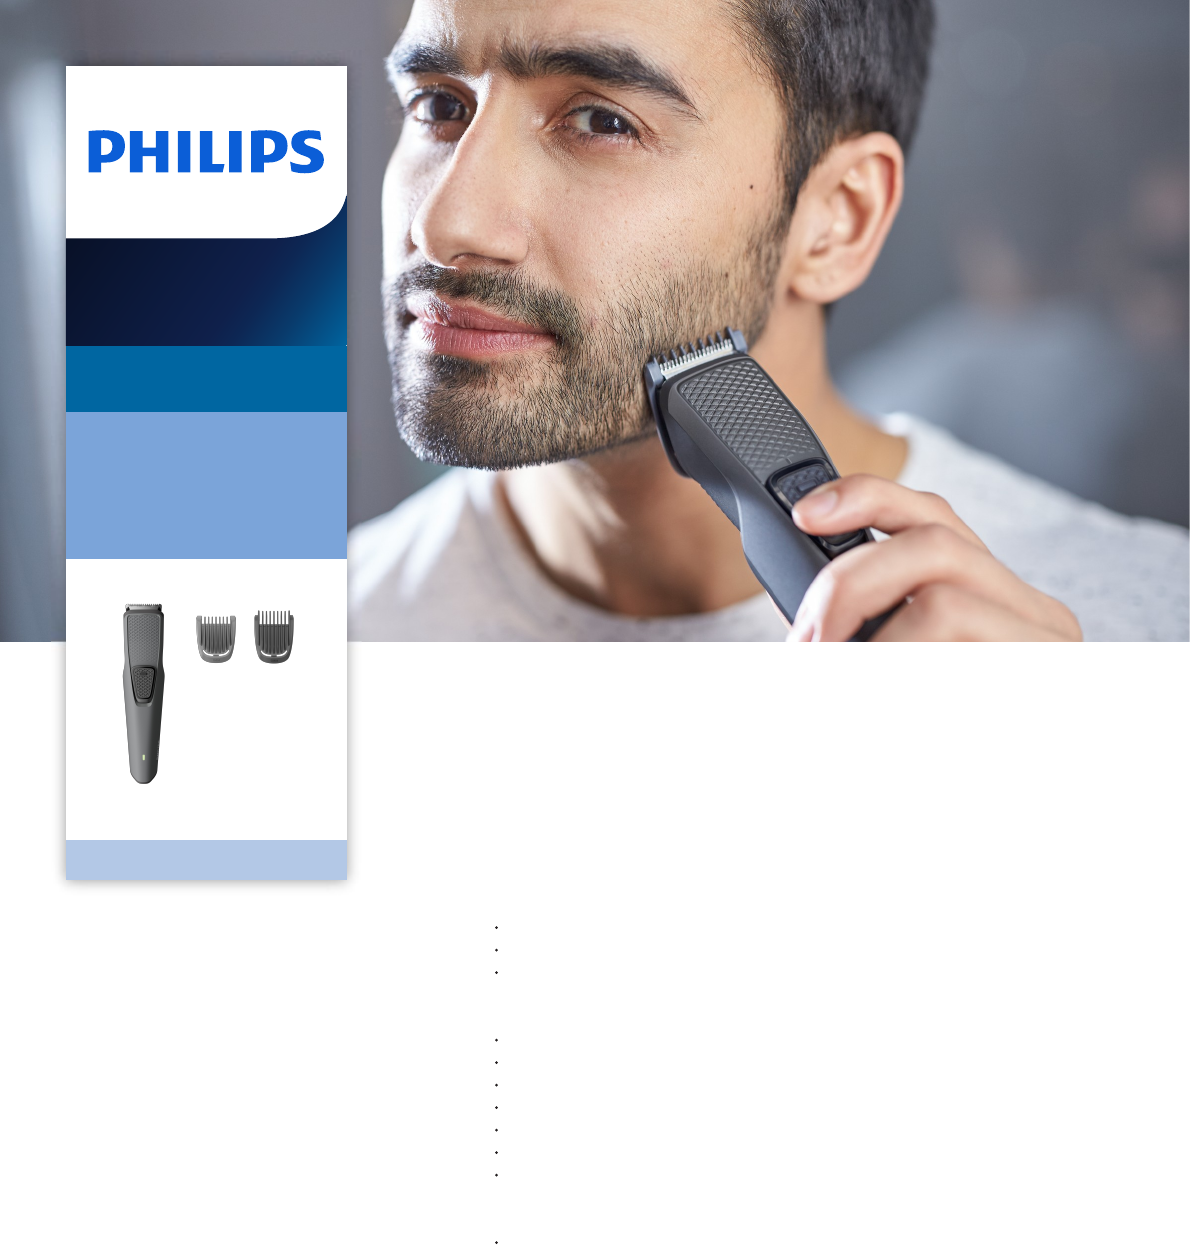 philips trimmer 1000 series bt1210